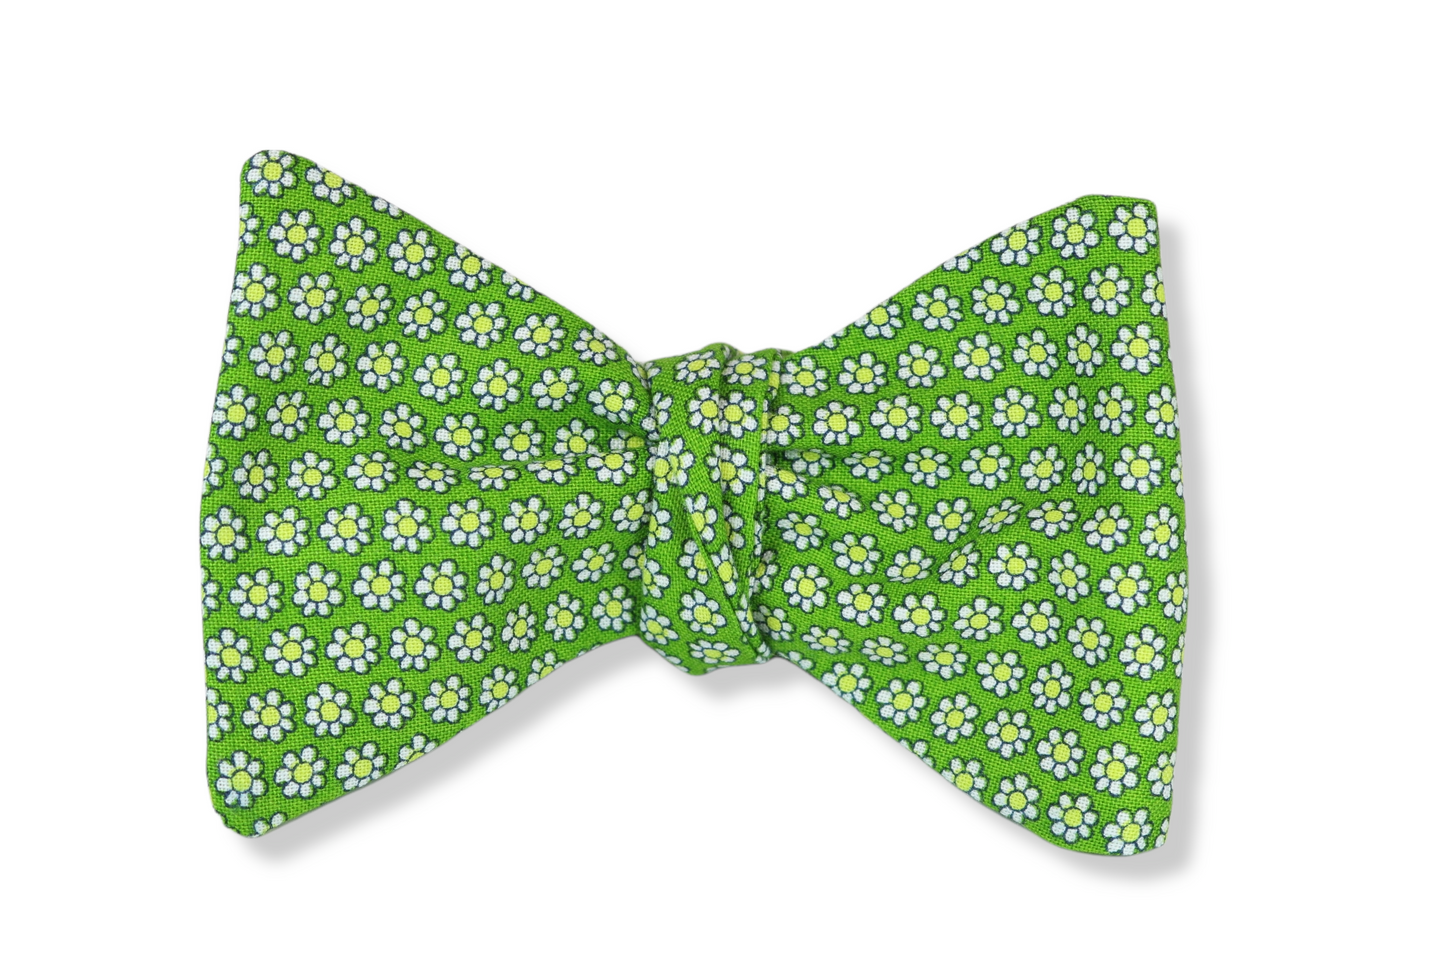 Finwic Green Butterfly Bow Tie